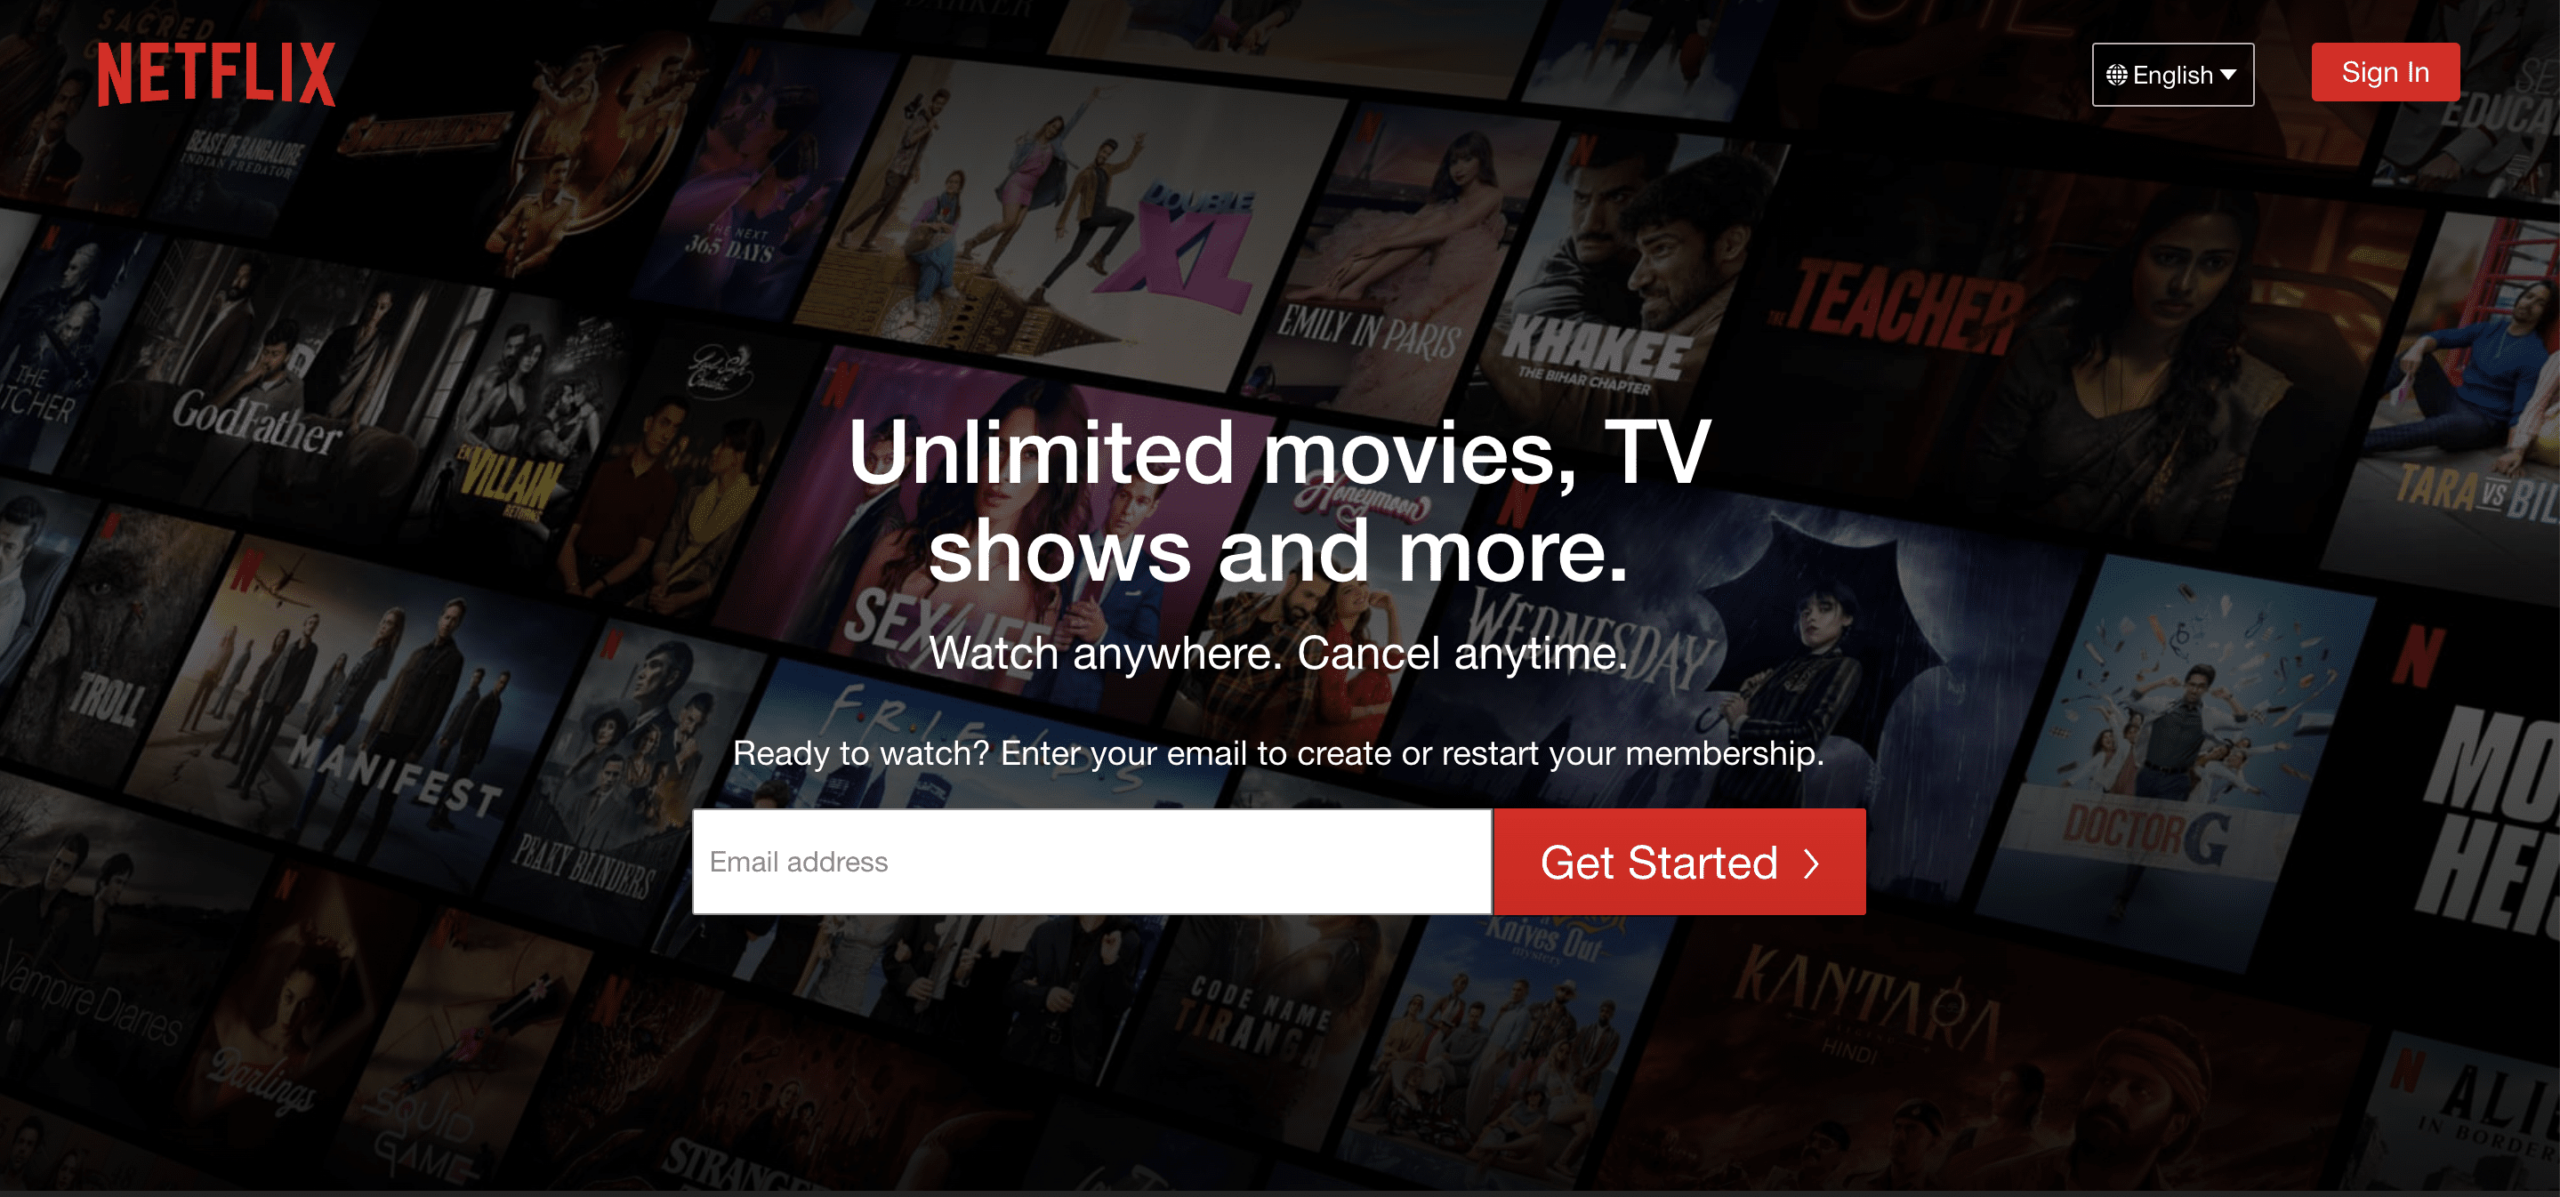 Legit Ways To Get Paid To Watch Netflix 